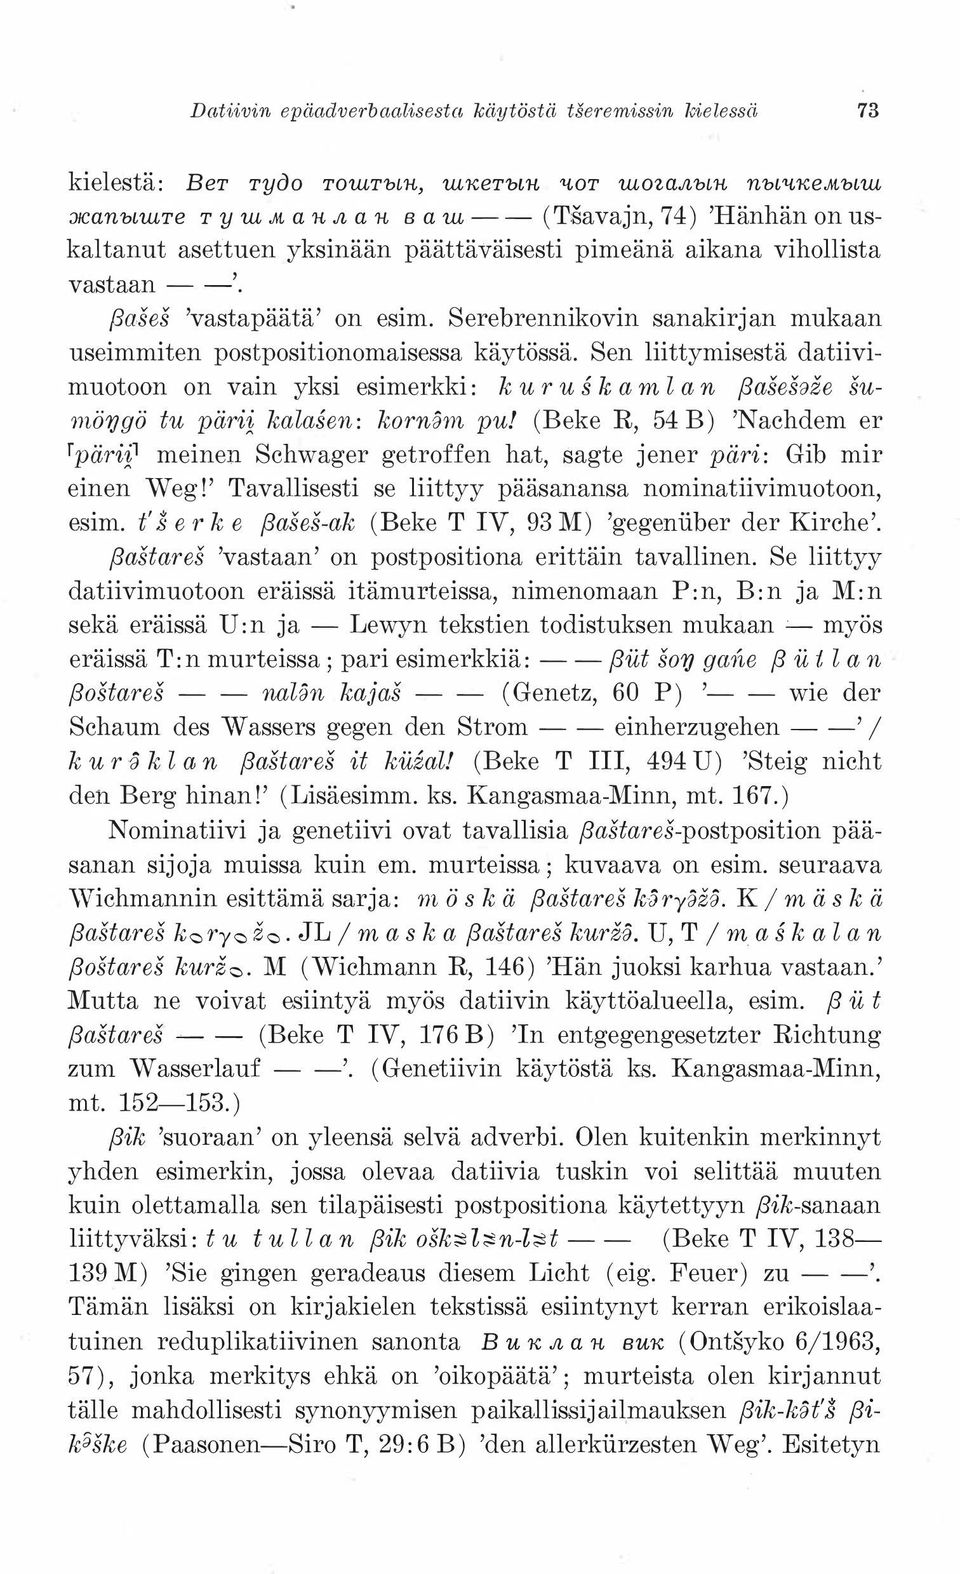 Serebrennikovin sanakirjan mukaan useimmiten postpositionomaisessa käytössä.